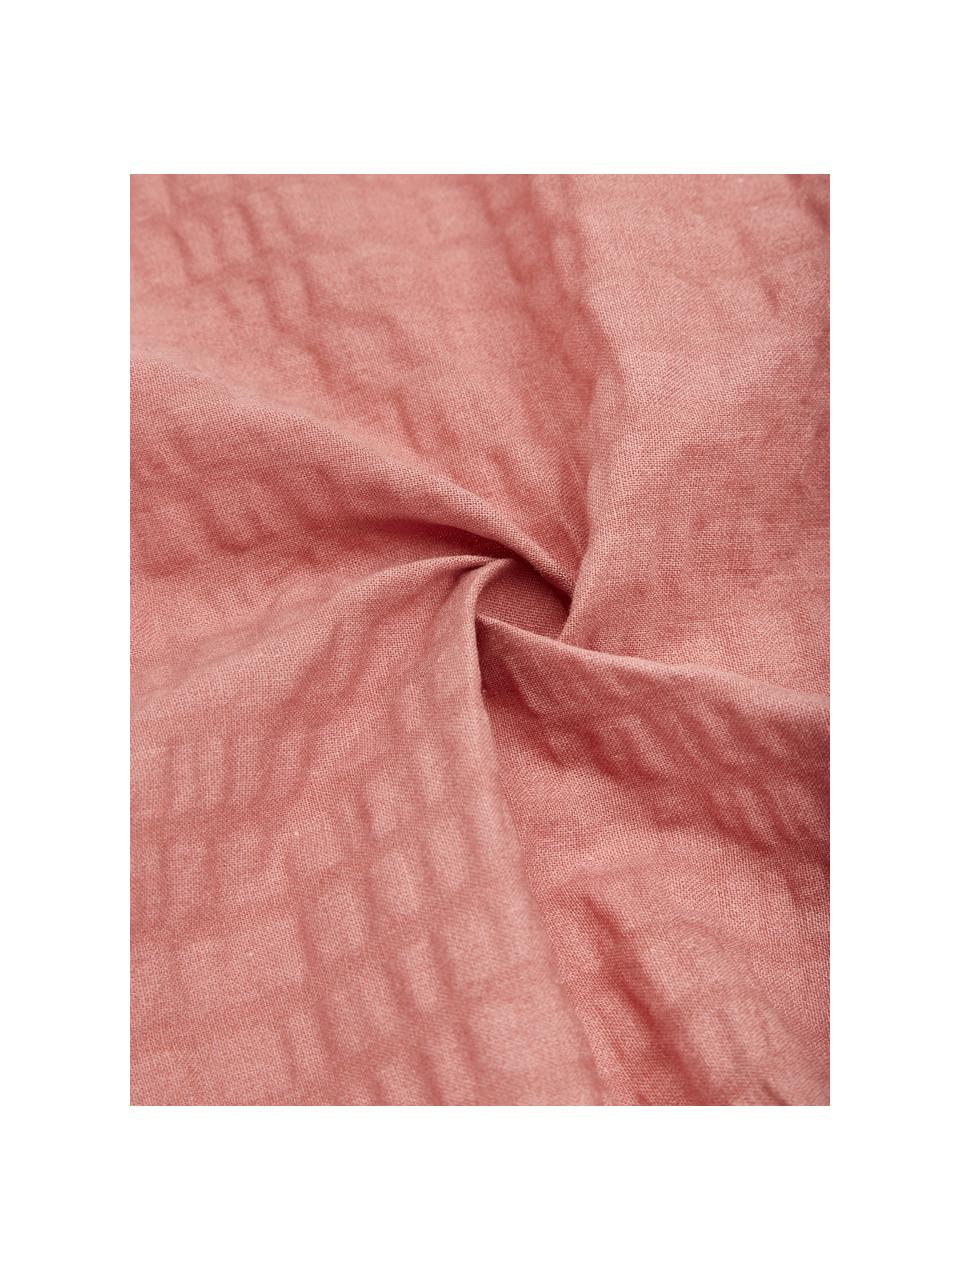 Krepové povlečení z bavlny Wave, Terakotová, 155 x 220 cm + 1 polštář 80 x 80 cm